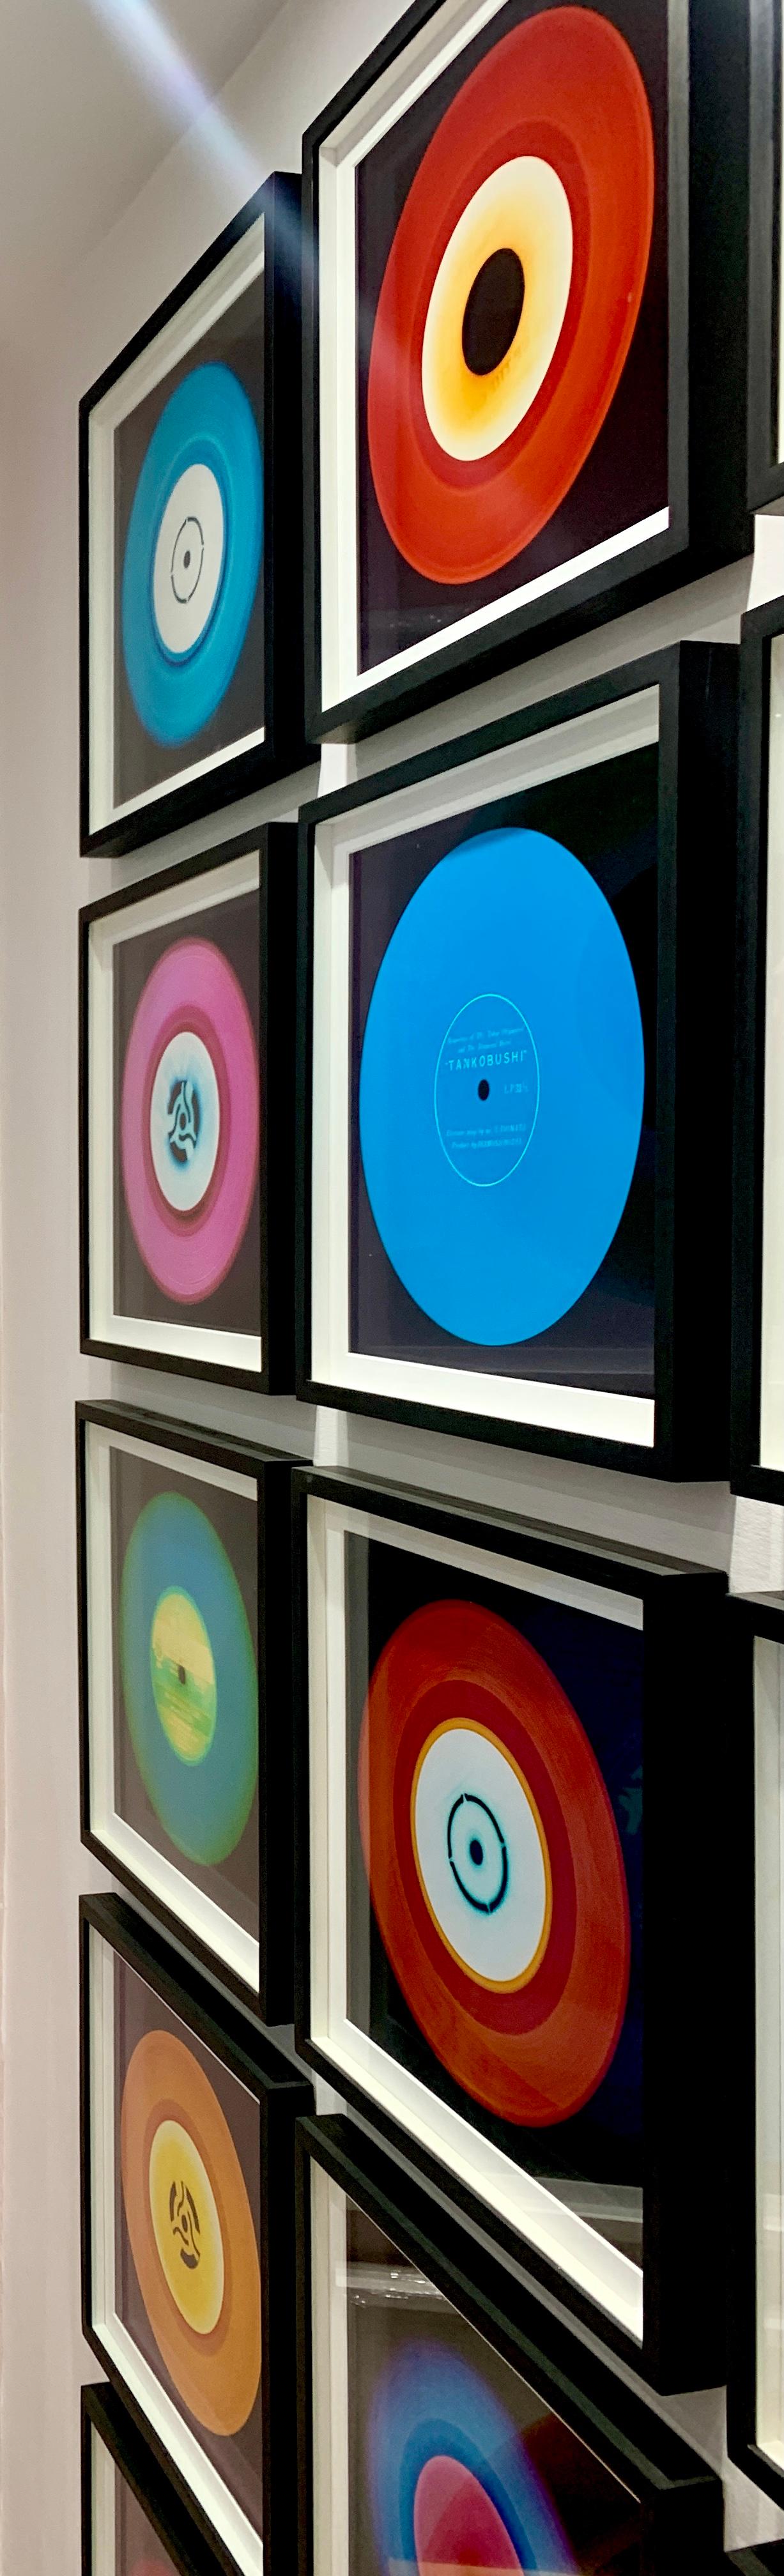 Heidler & Heeps Vinyl Collection Fünfzehnteilige Regenbogeninstallation.
Die renommierten zeitgenössischen Fotografen Richard Heeps und Natasha Heidler haben für diese wunderschöne, faszinierende Kollektion zusammengearbeitet. Eine Hommage an die